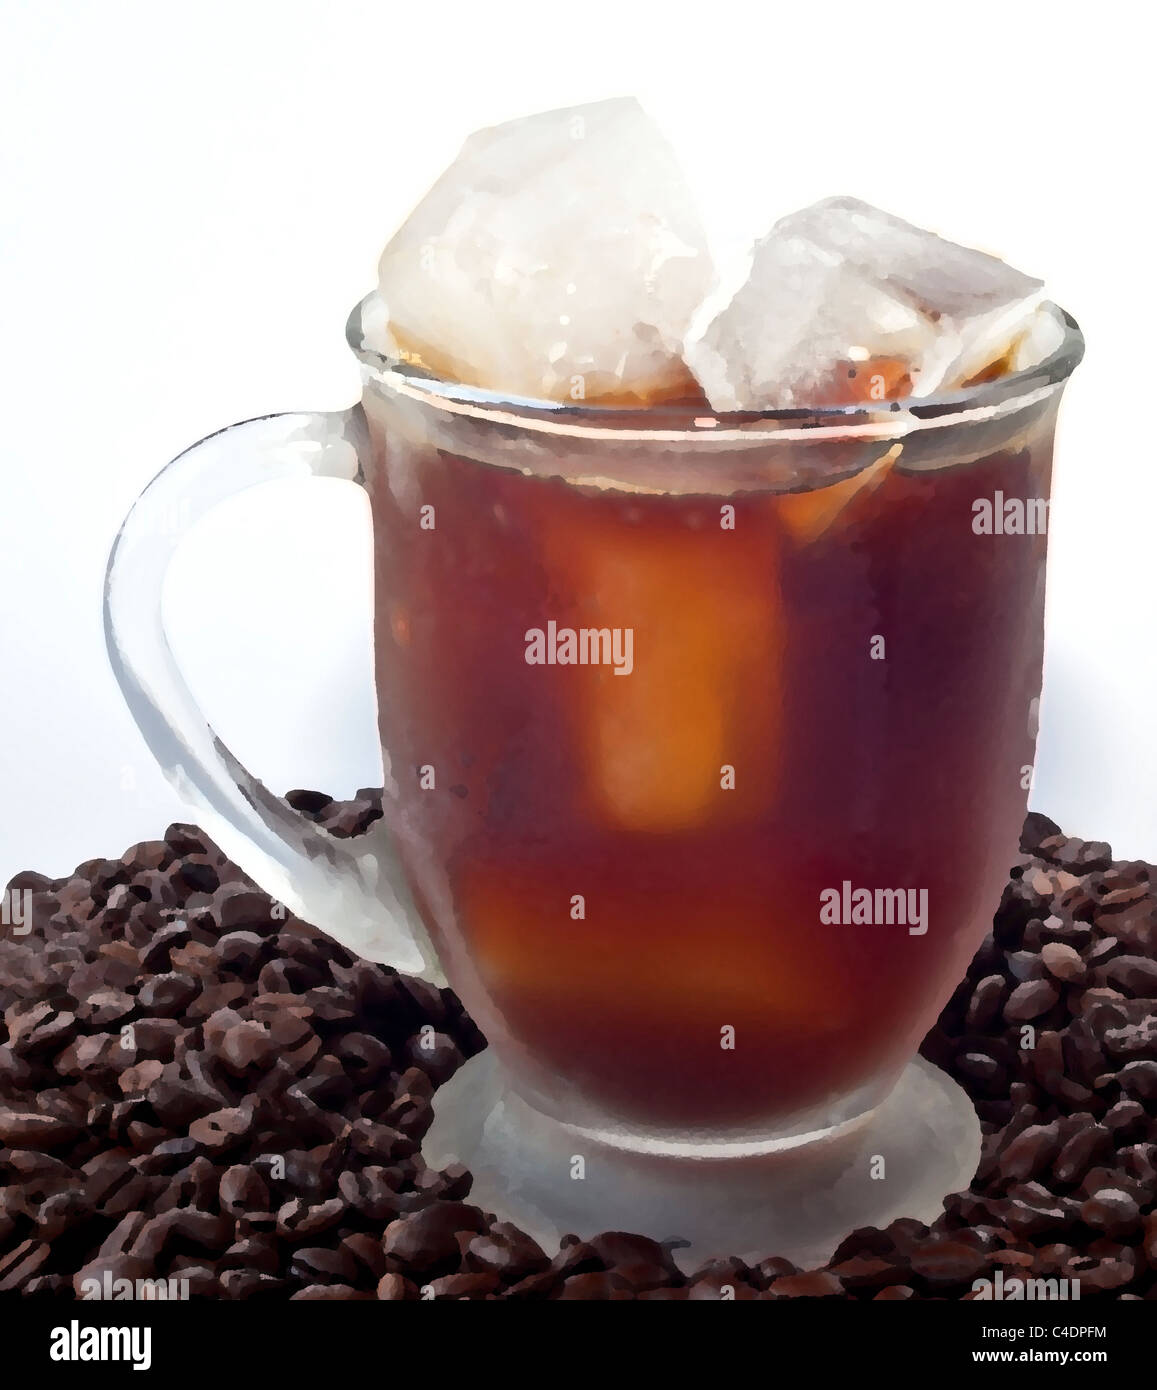 Eiskaffee im Glas auf Haufen von Bohnen Stockfoto